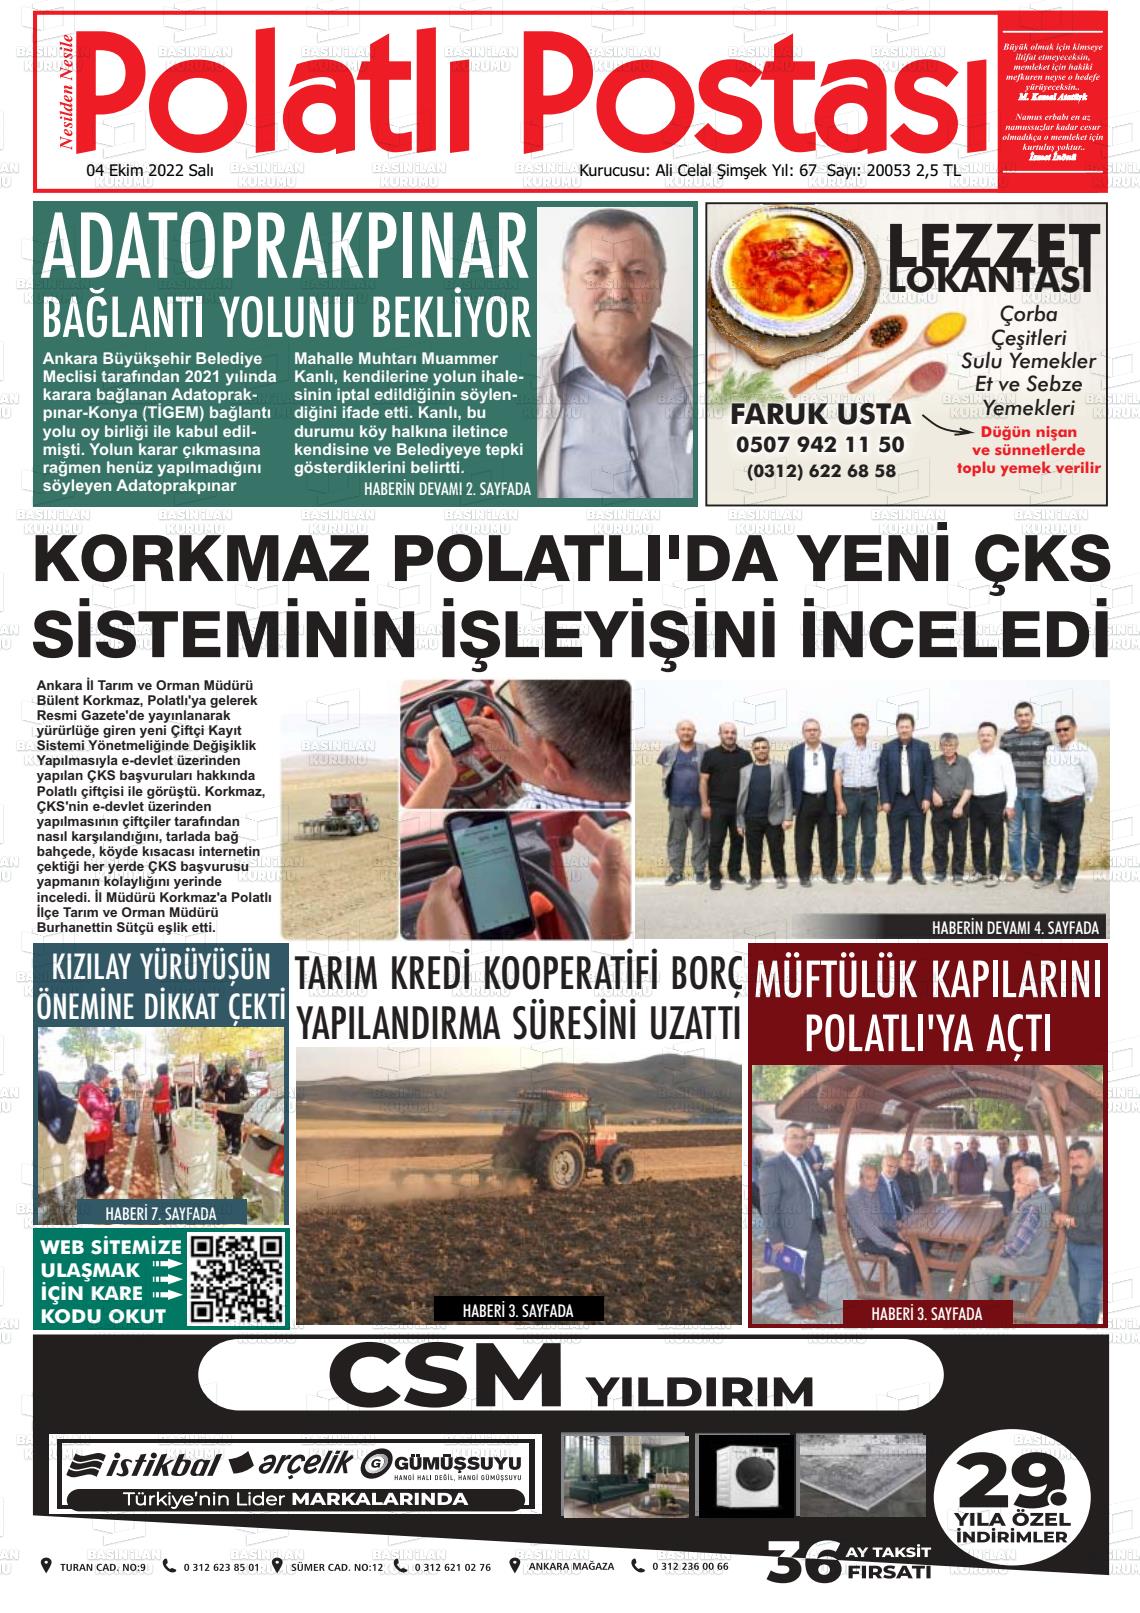 04 Ekim 2022 Polatlı Postası Gazete Manşeti